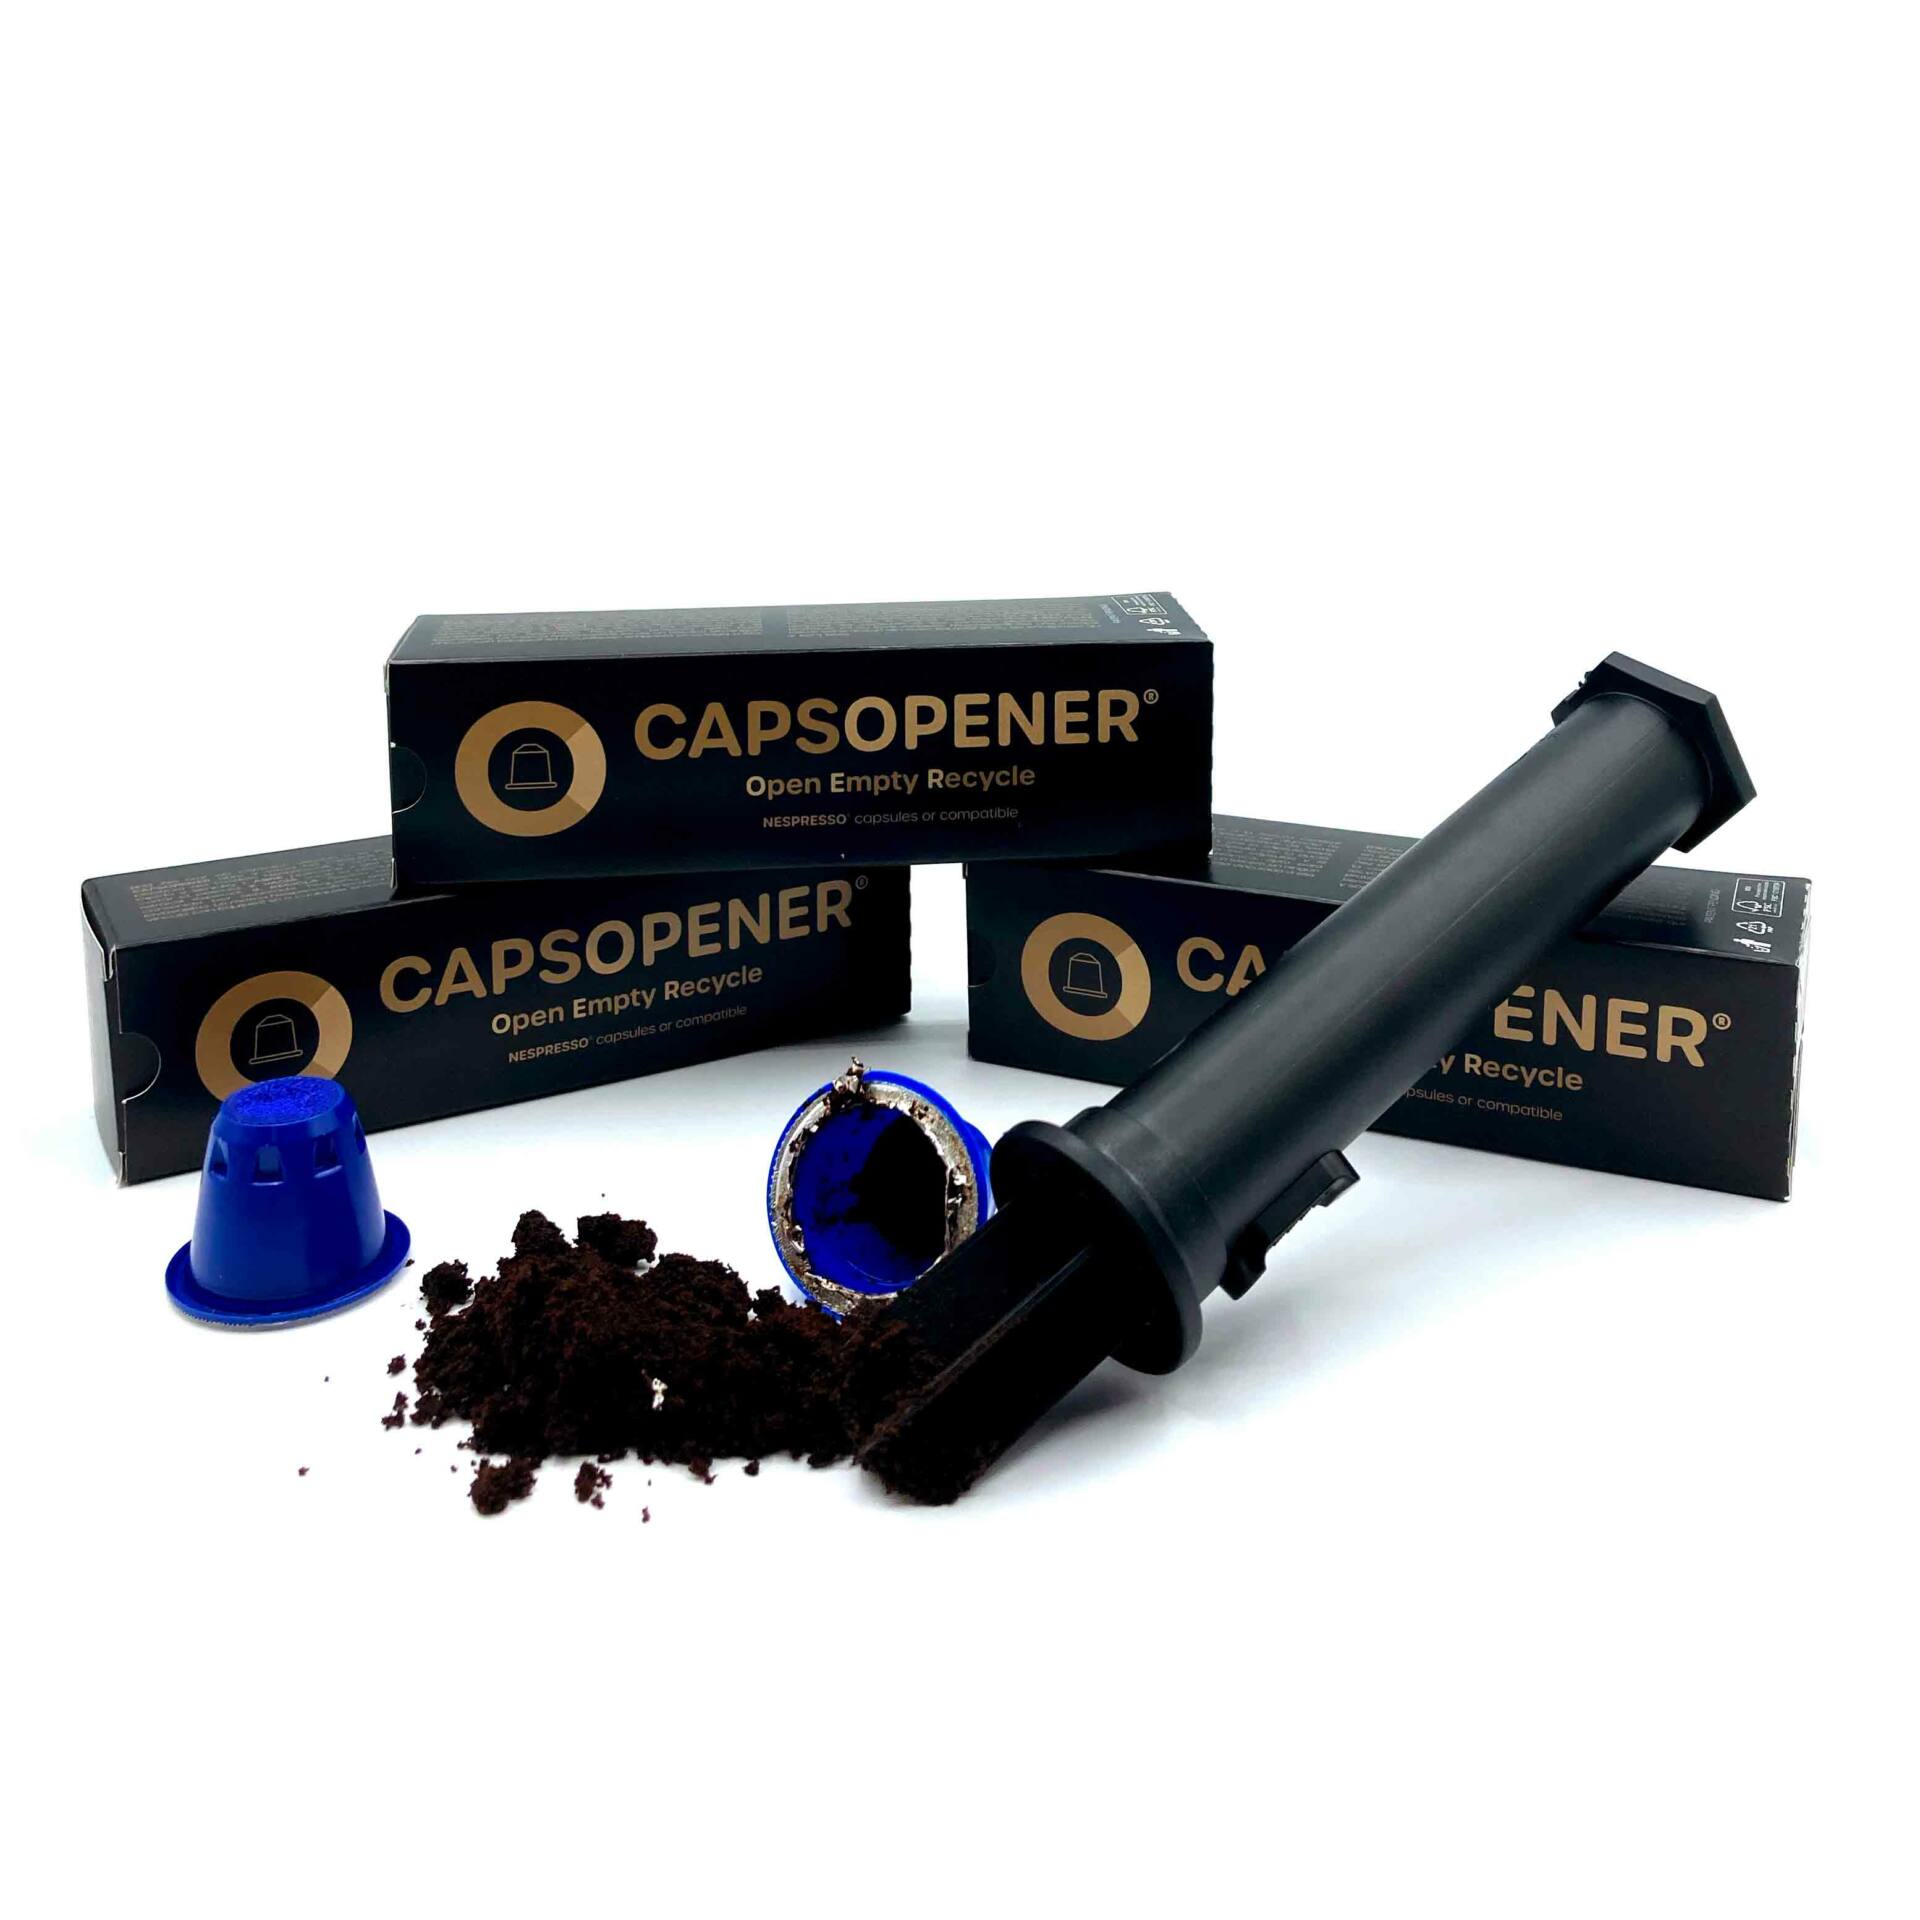 CAPSOPENER - apri e svuota capsule Nespresso® e compatibili